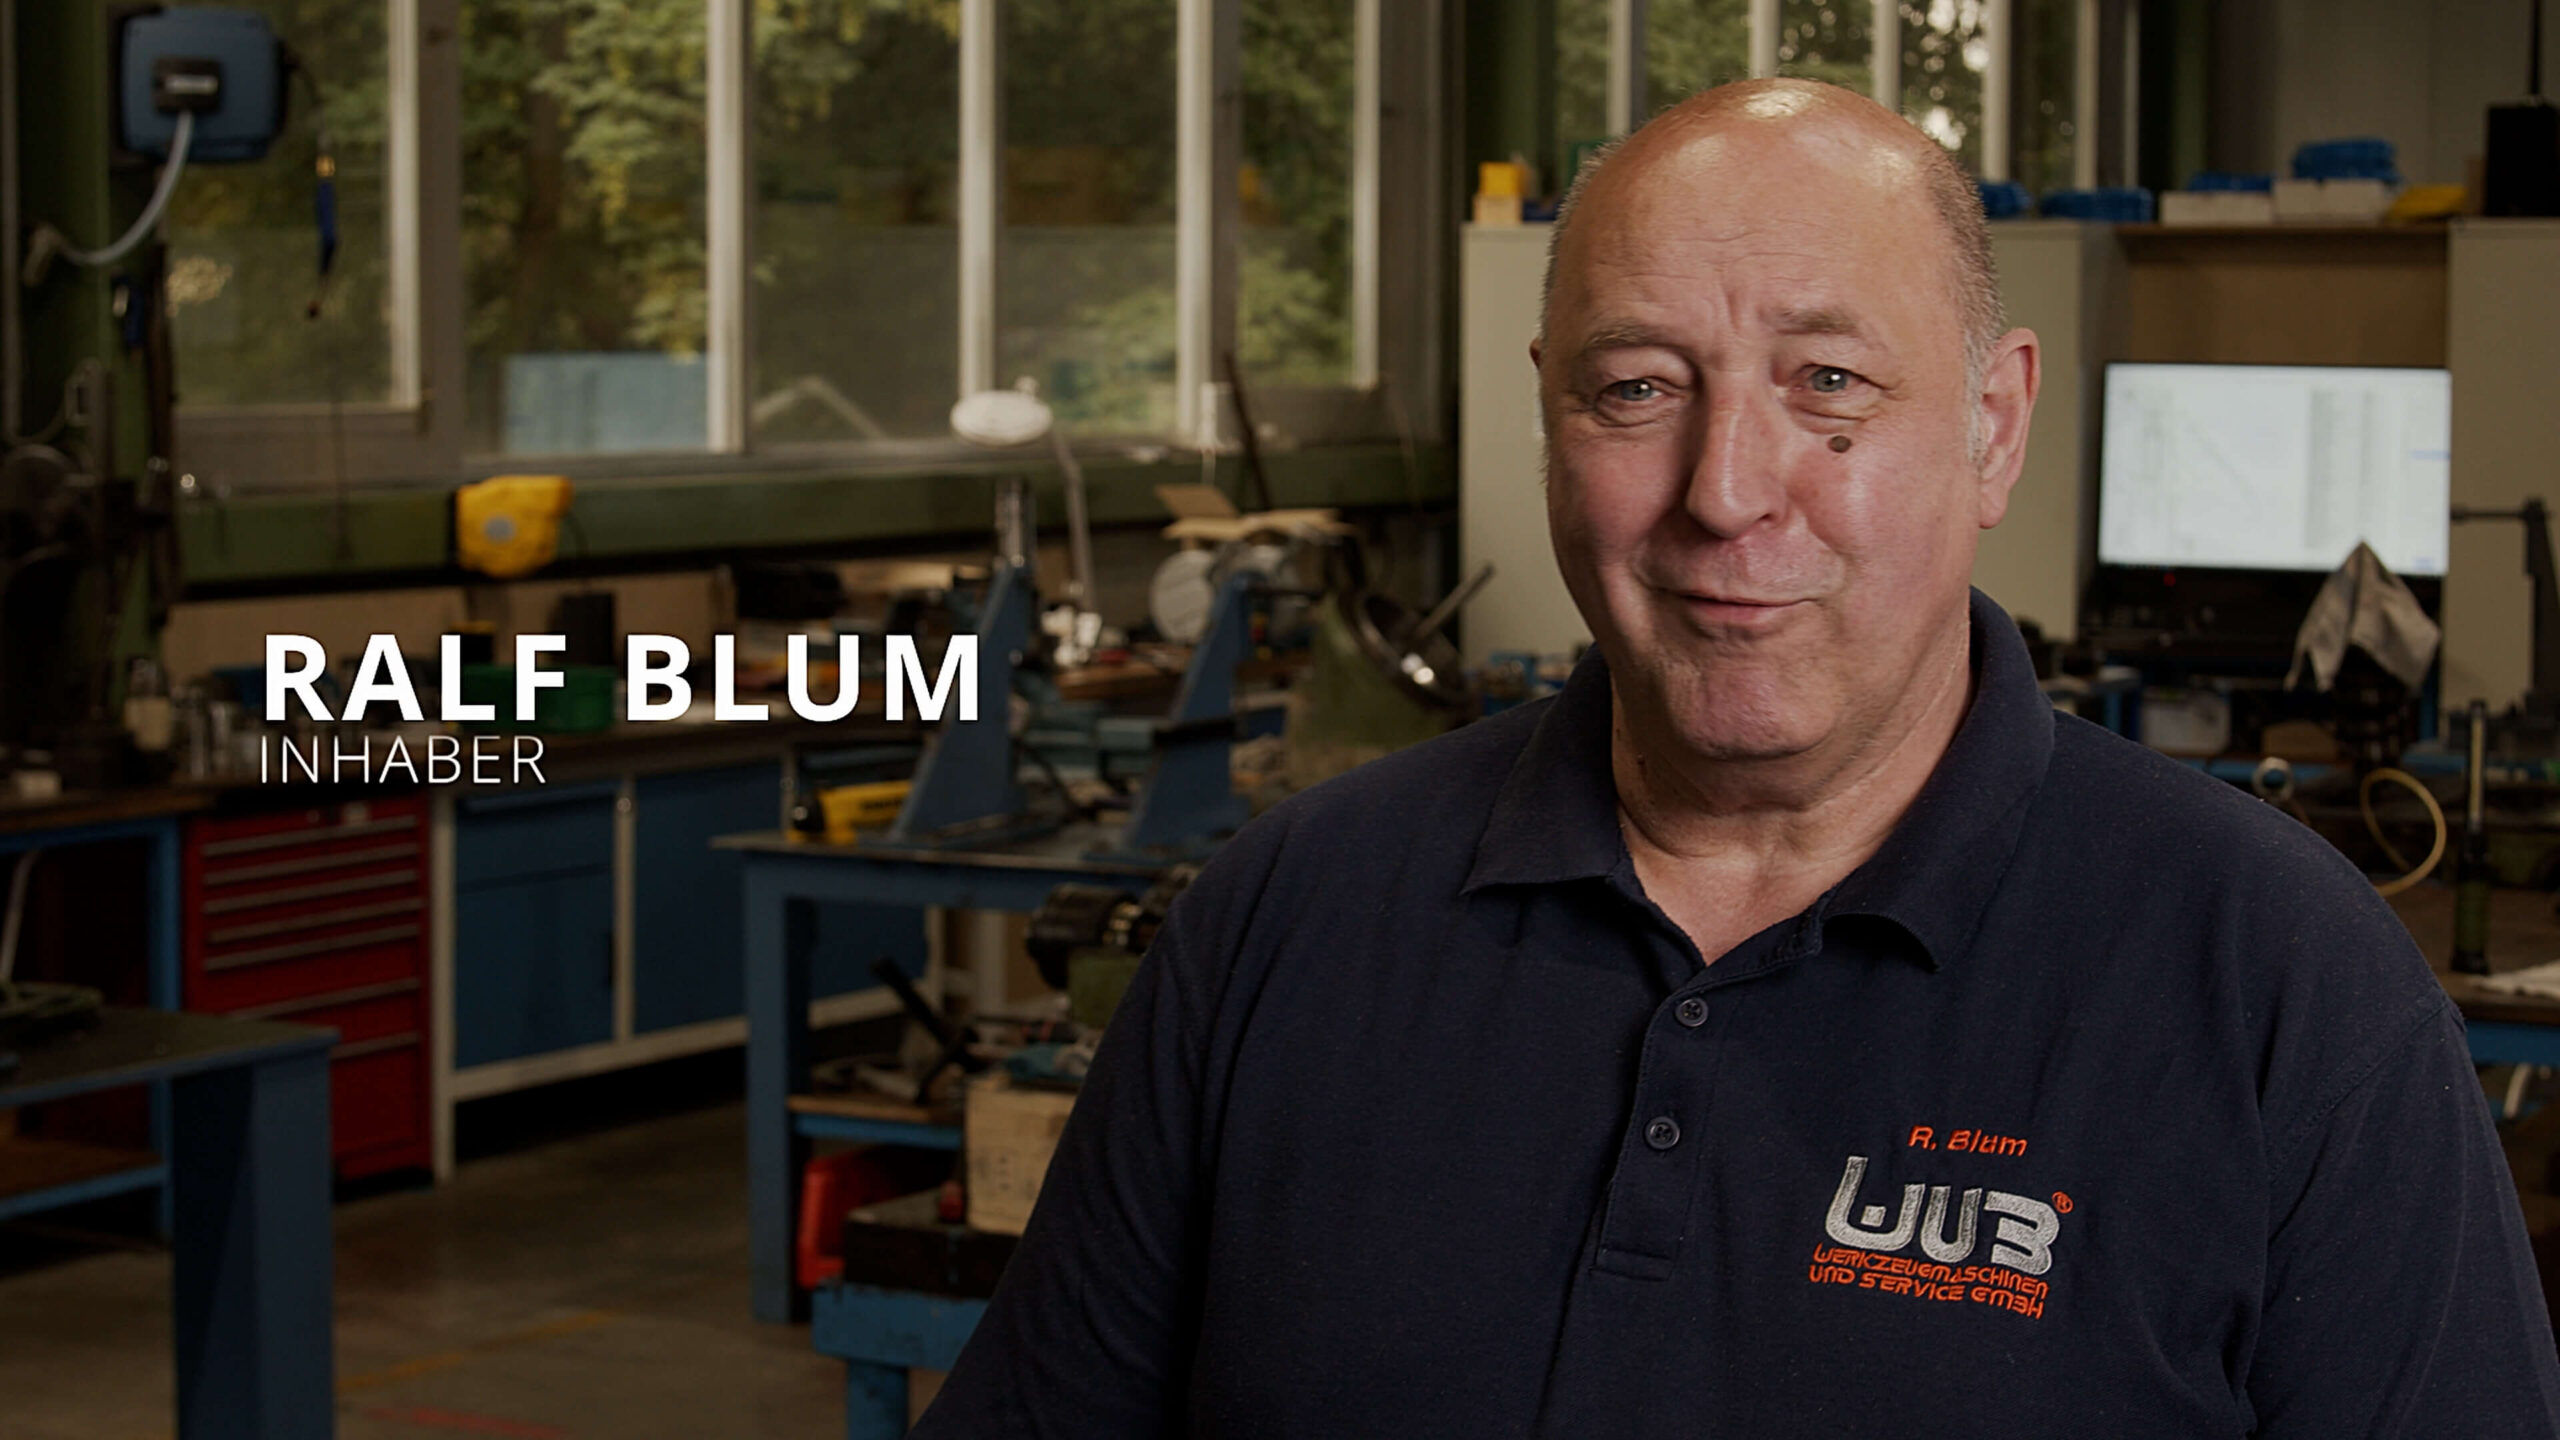 WuB Maschinenbau Ralf Blum stellt sich vor